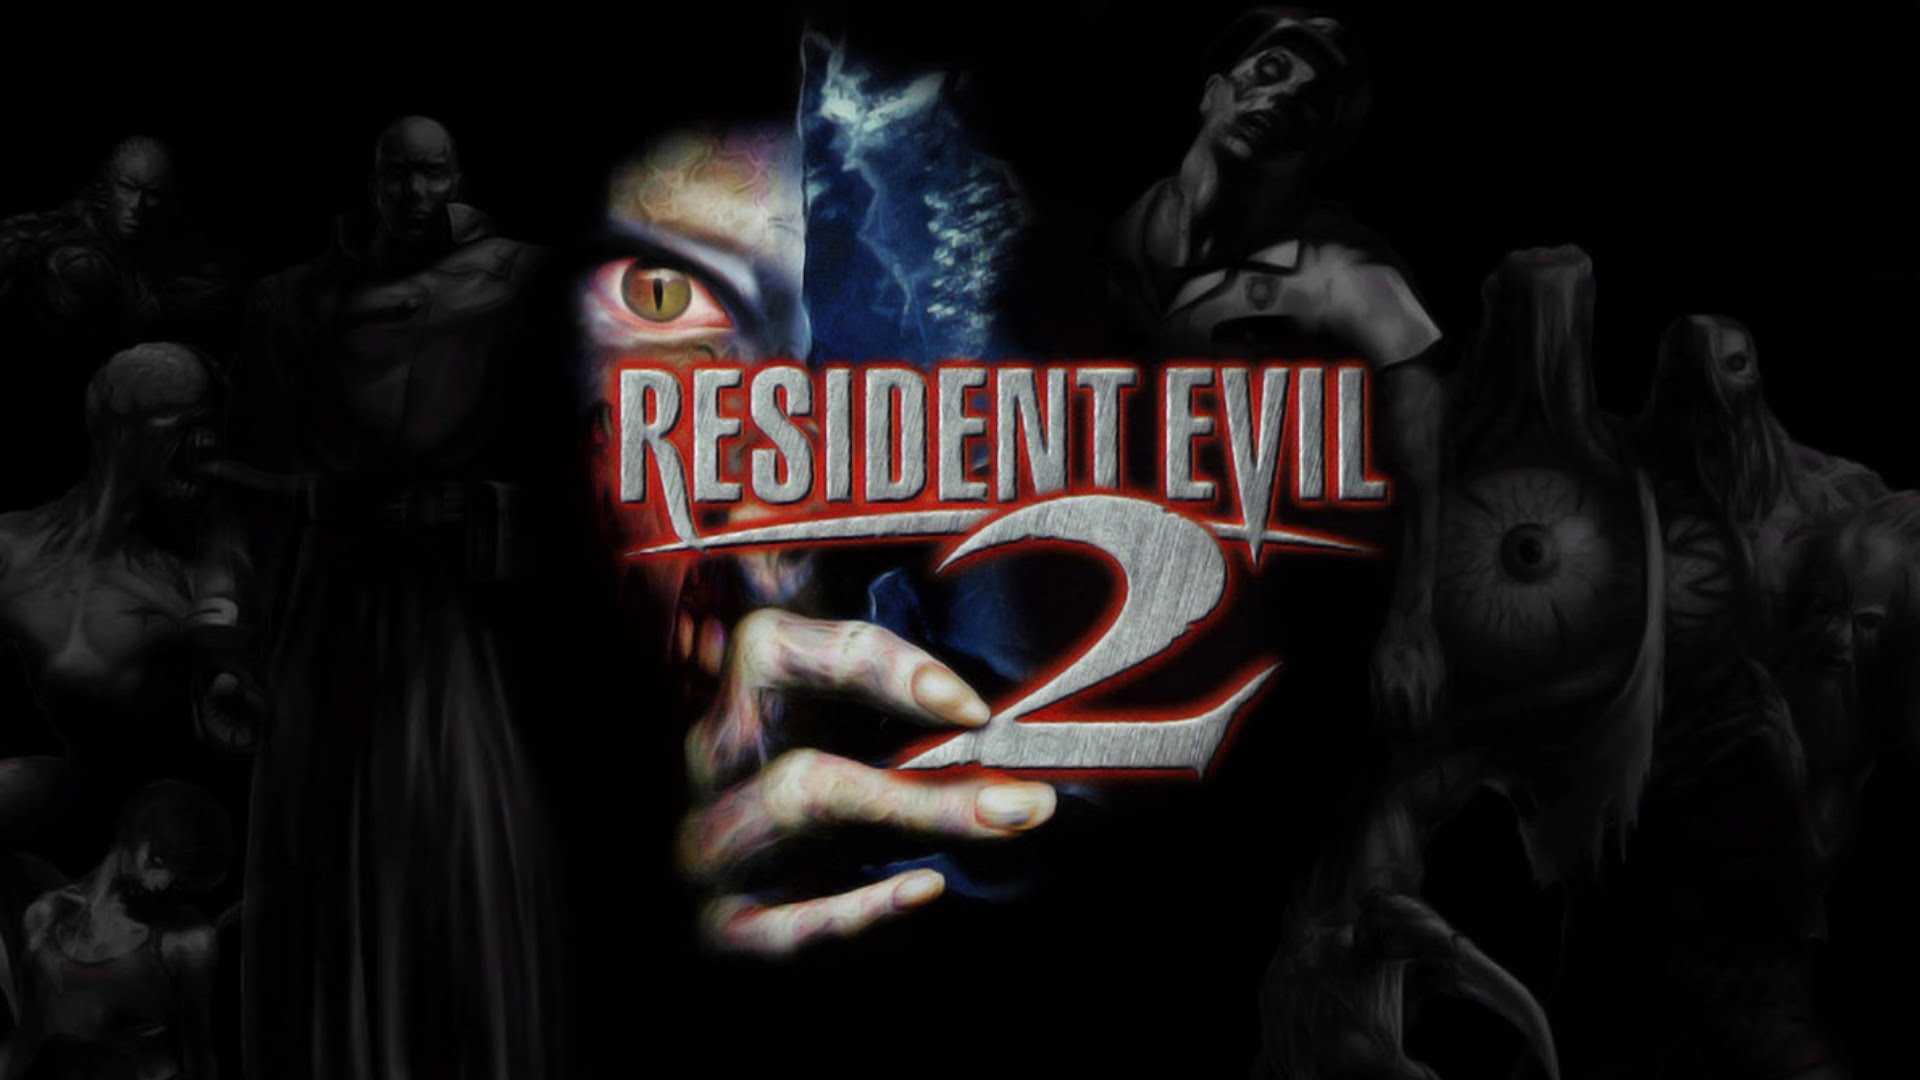 ข่าวลือ! Resident Evil 2 Remake ถูกพัฒนาด้วยเอนจิ้นเดียวกับ Resident Evil 7